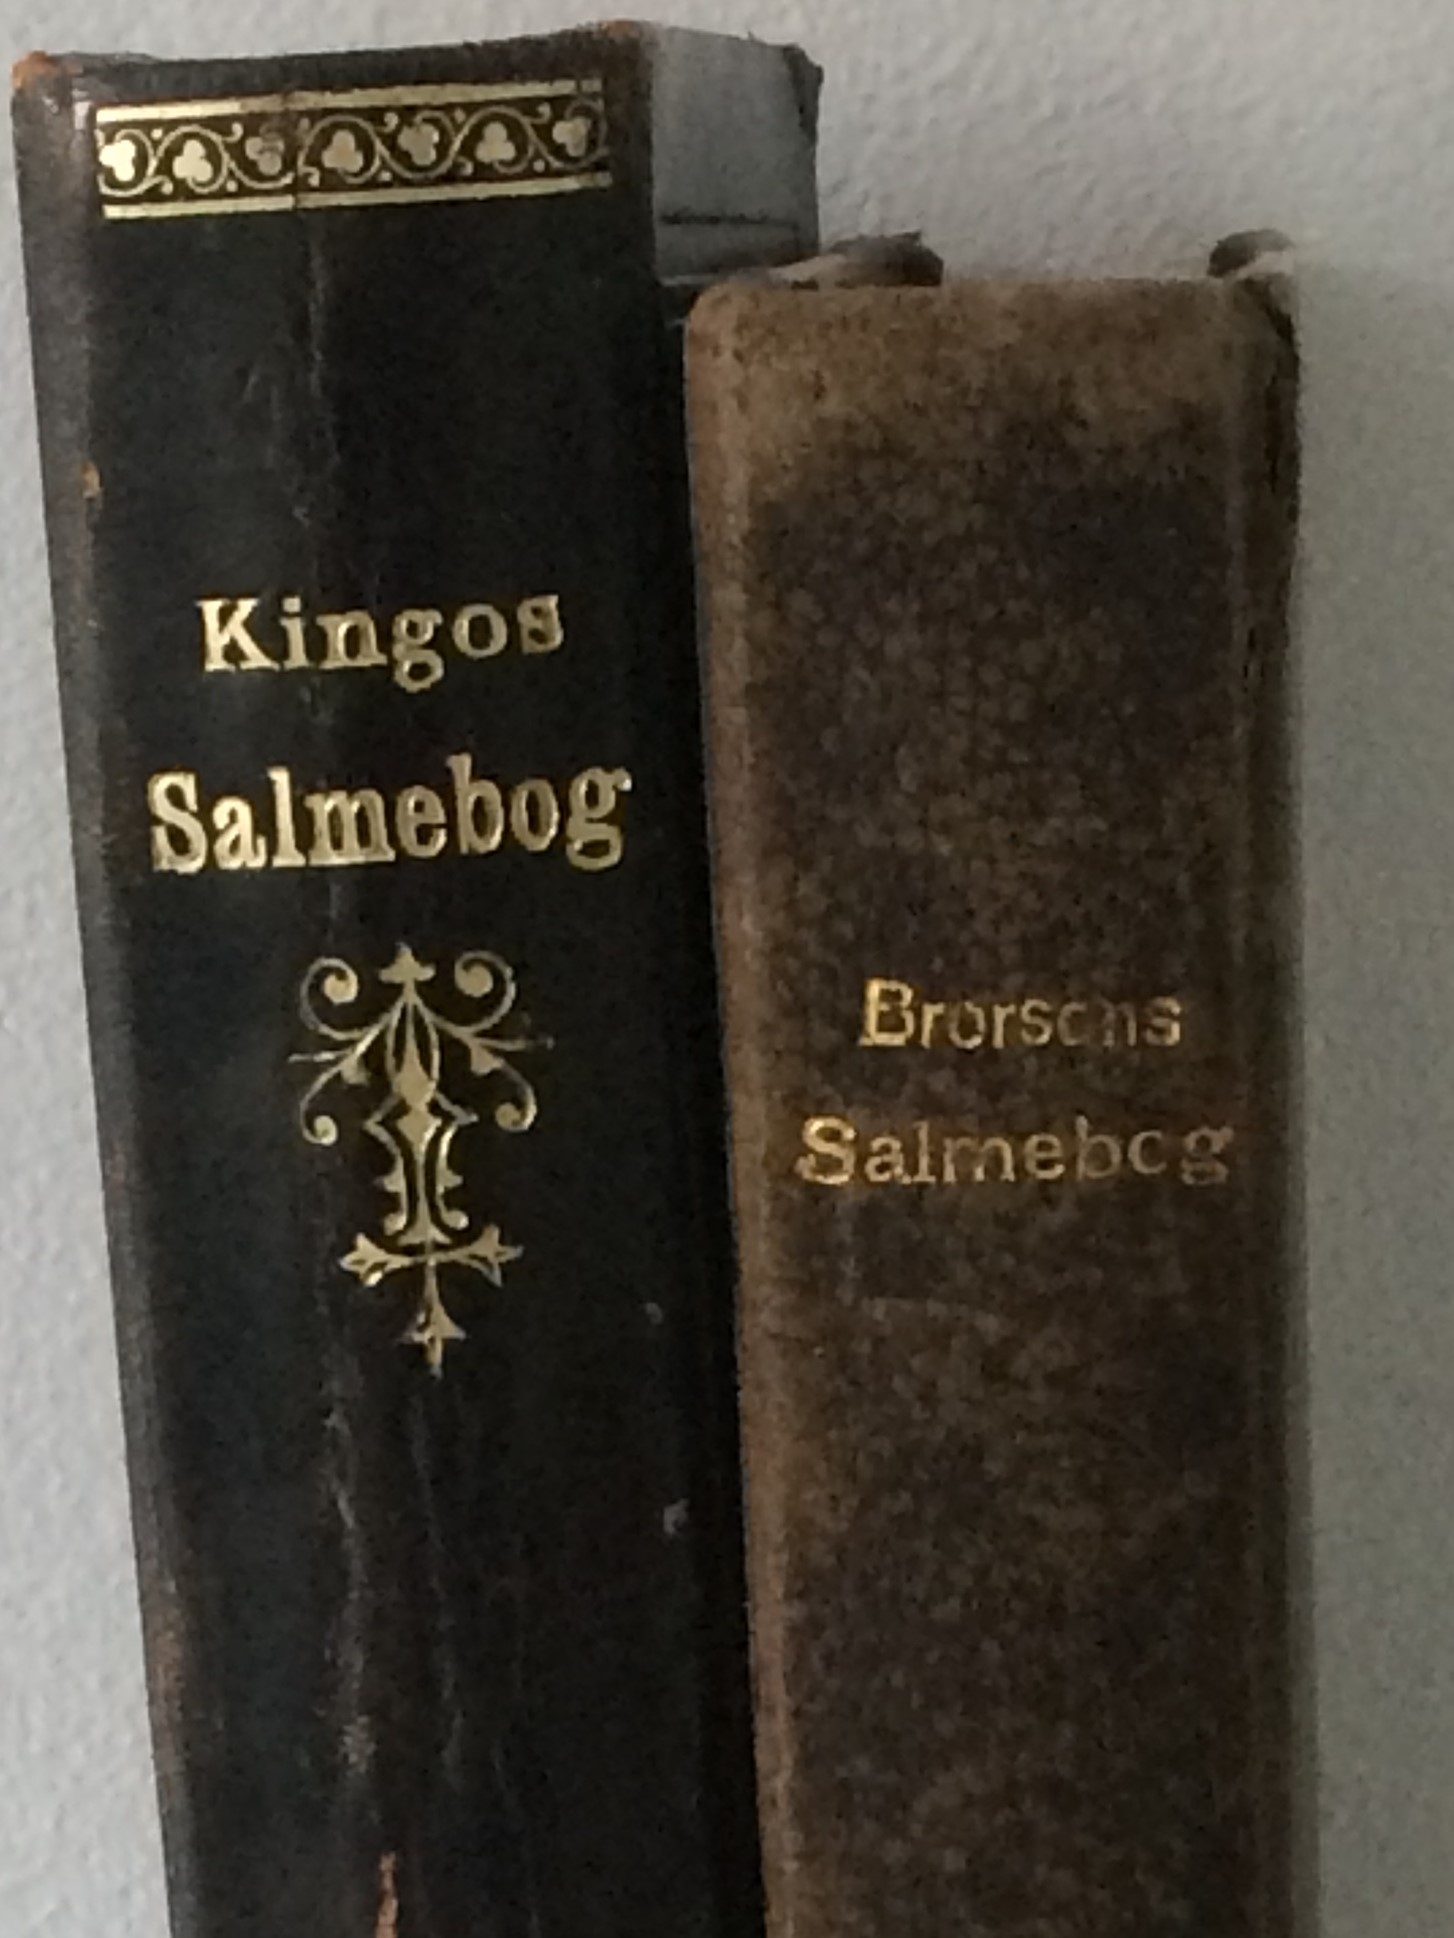 Fotografi av to bogrygge. Den ene er Kingos, og den anden er Brorsons salmebog.